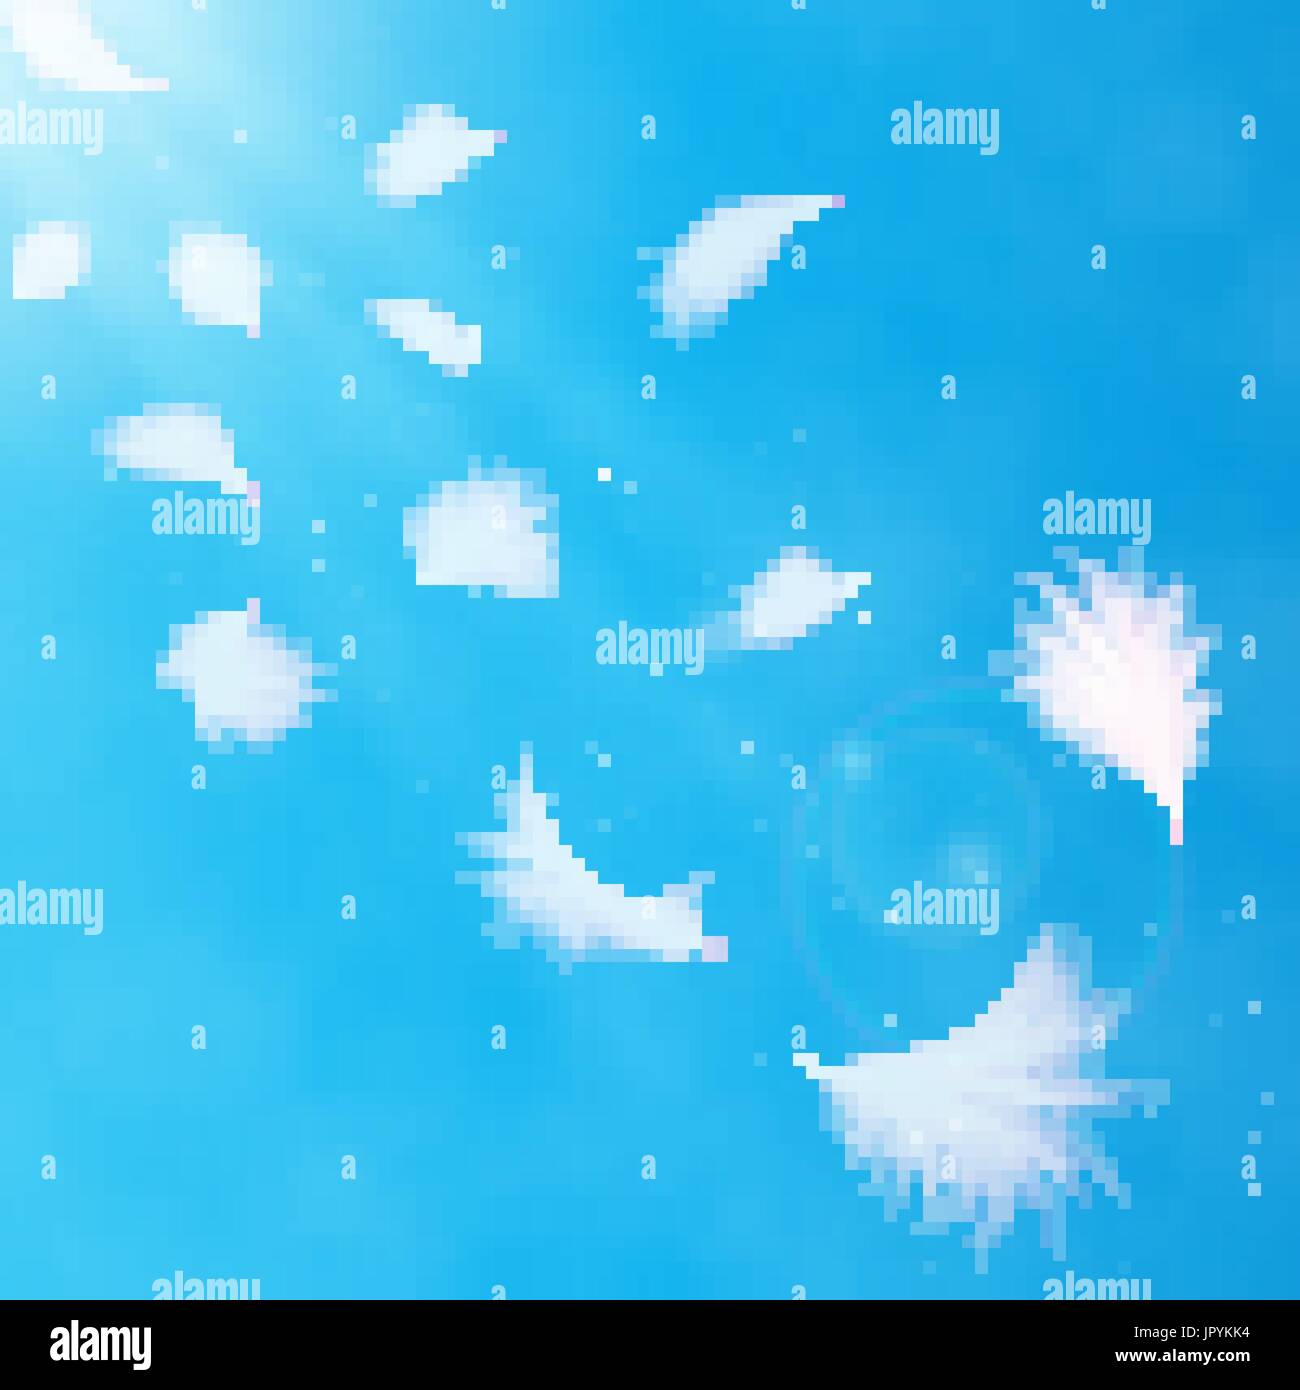 Realistische 3d detaillierte weißen Schwan Federn auf einem hellblauen Hintergrund. Vektor-Illustration. Fallende Federn abstrakte Lichtgestaltung Stock Vektor